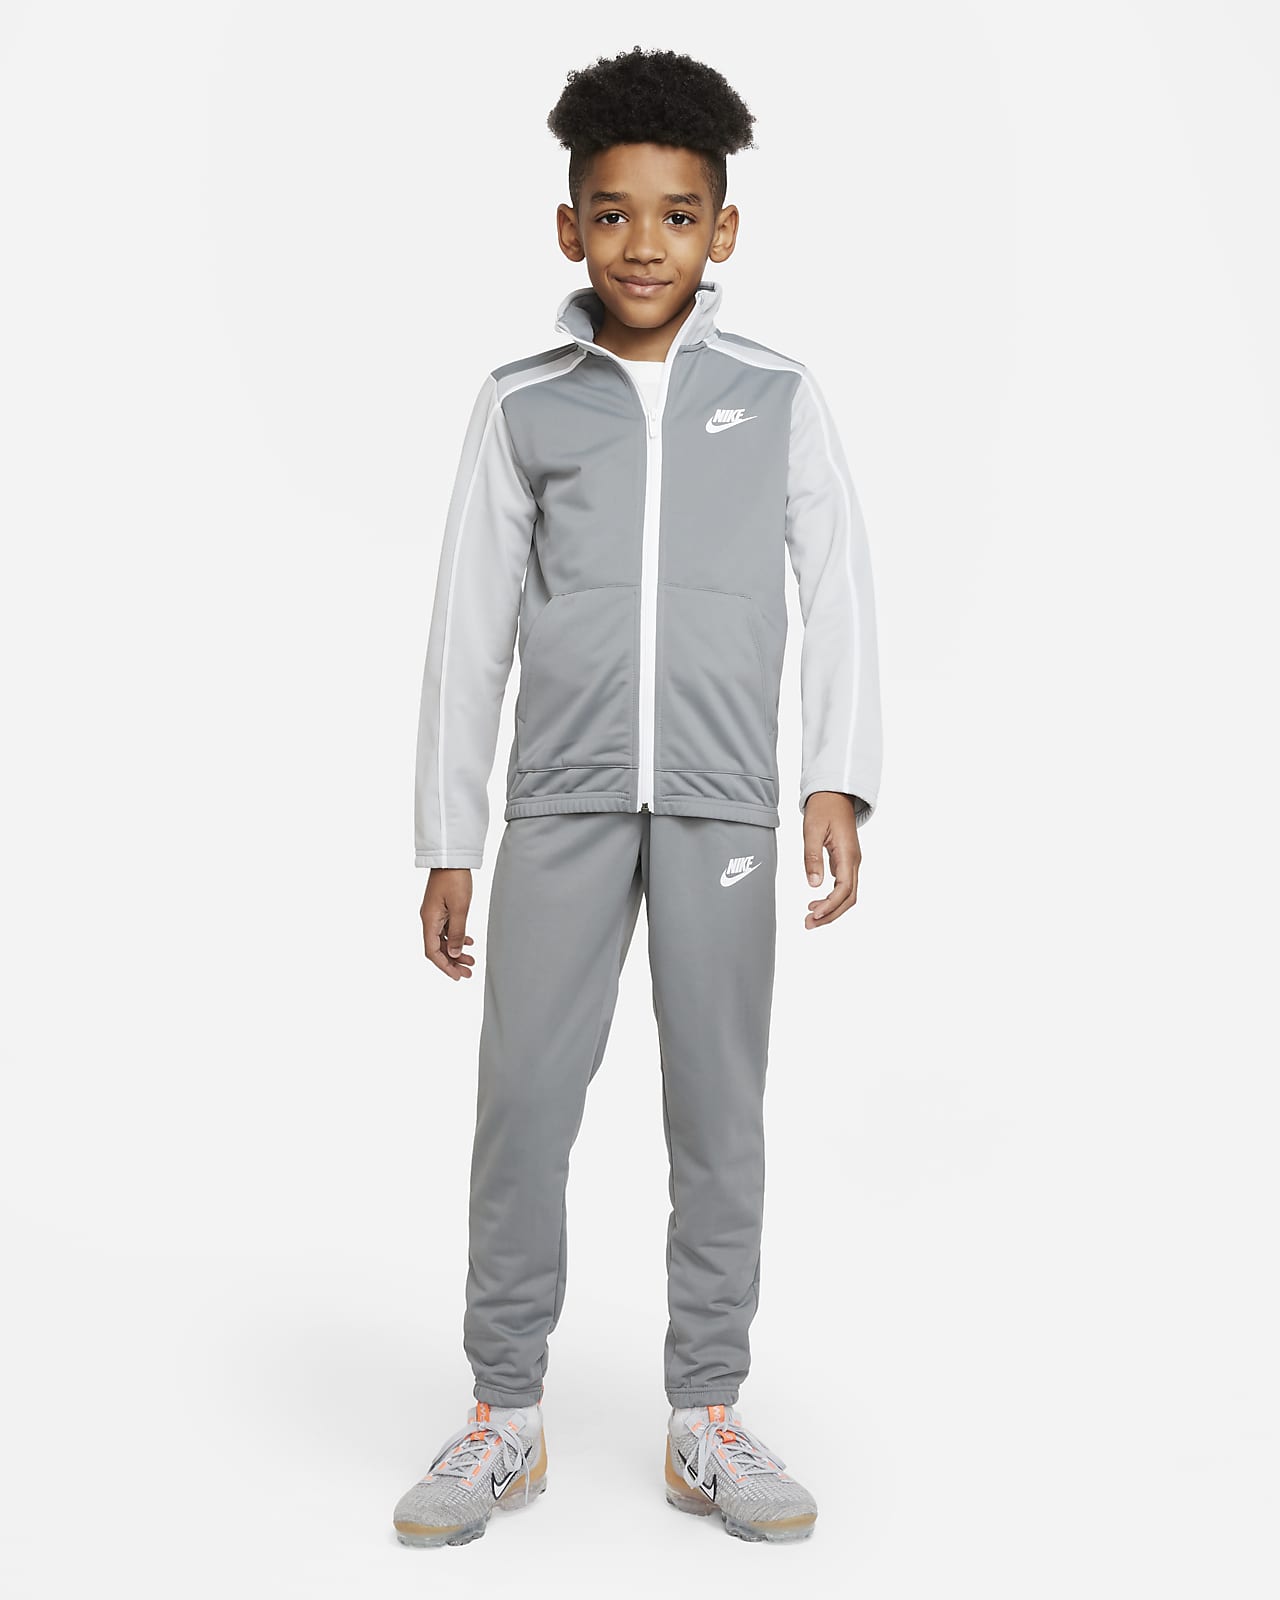 Bijwonen Smeltend explosie Nike Sportswear Trainingspak voor kids. Nike NL